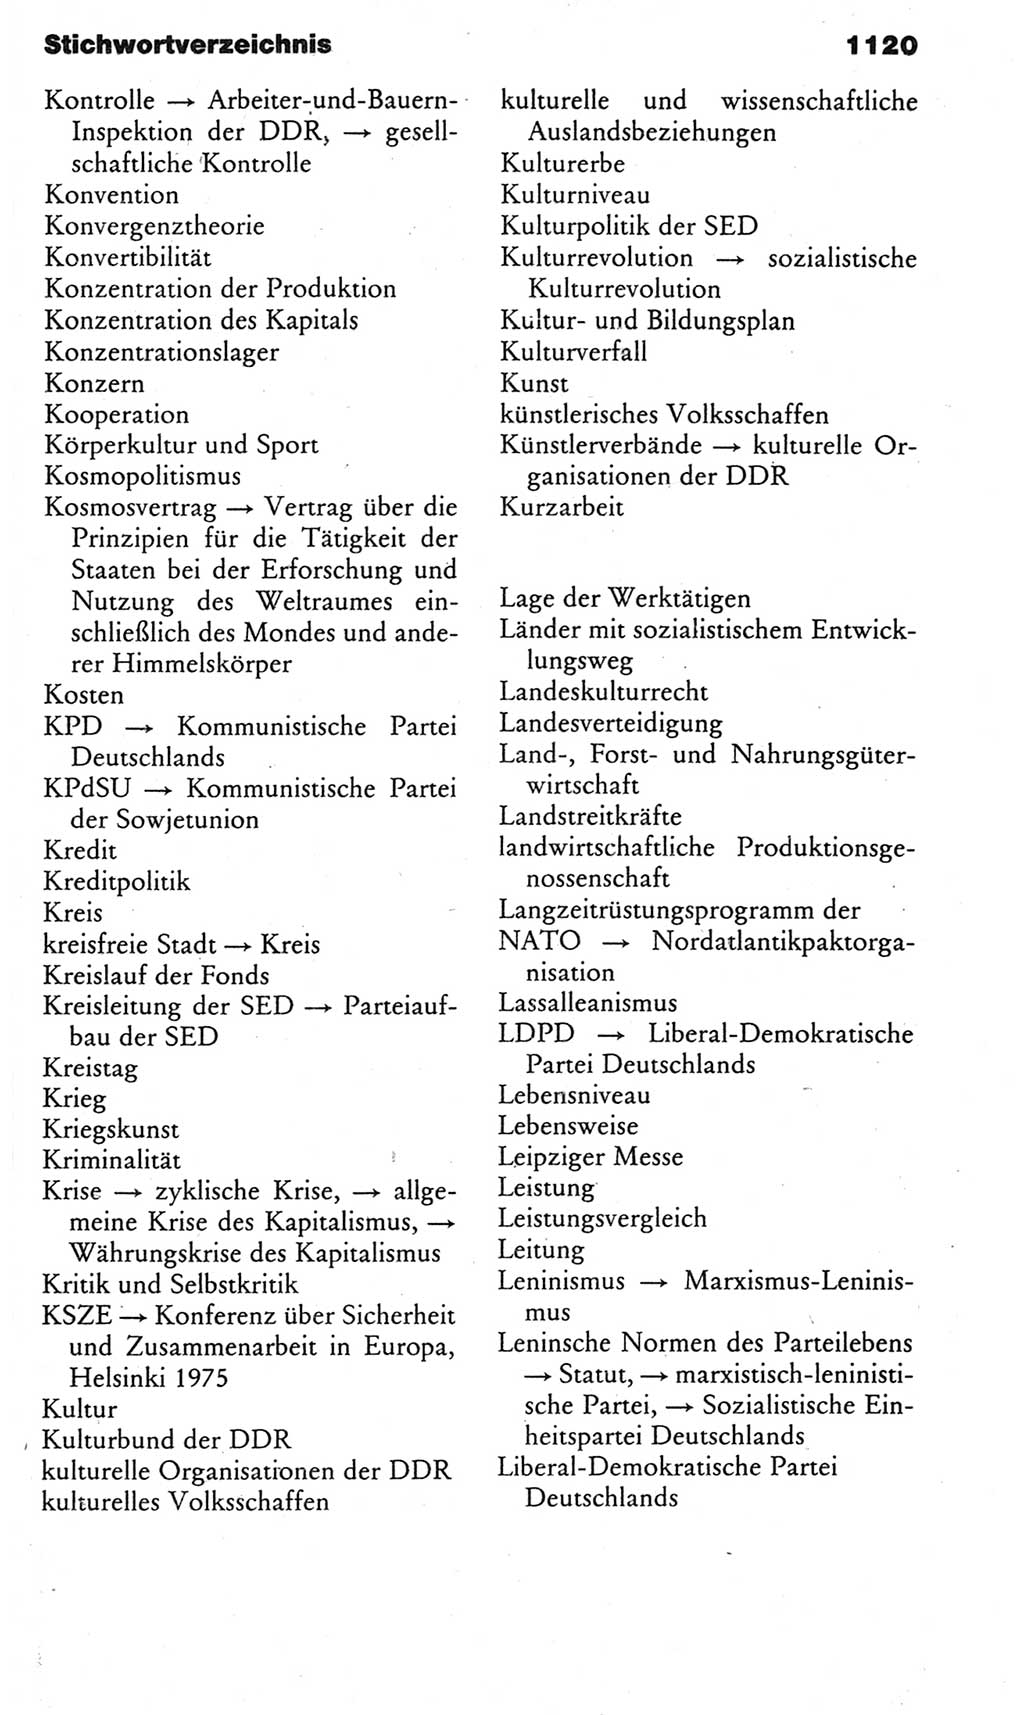 Kleines politisches Wörterbuch [Deutsche Demokratische Republik (DDR)] 1983, Seite 1120 (Kl. pol. Wb. DDR 1983, S. 1120)